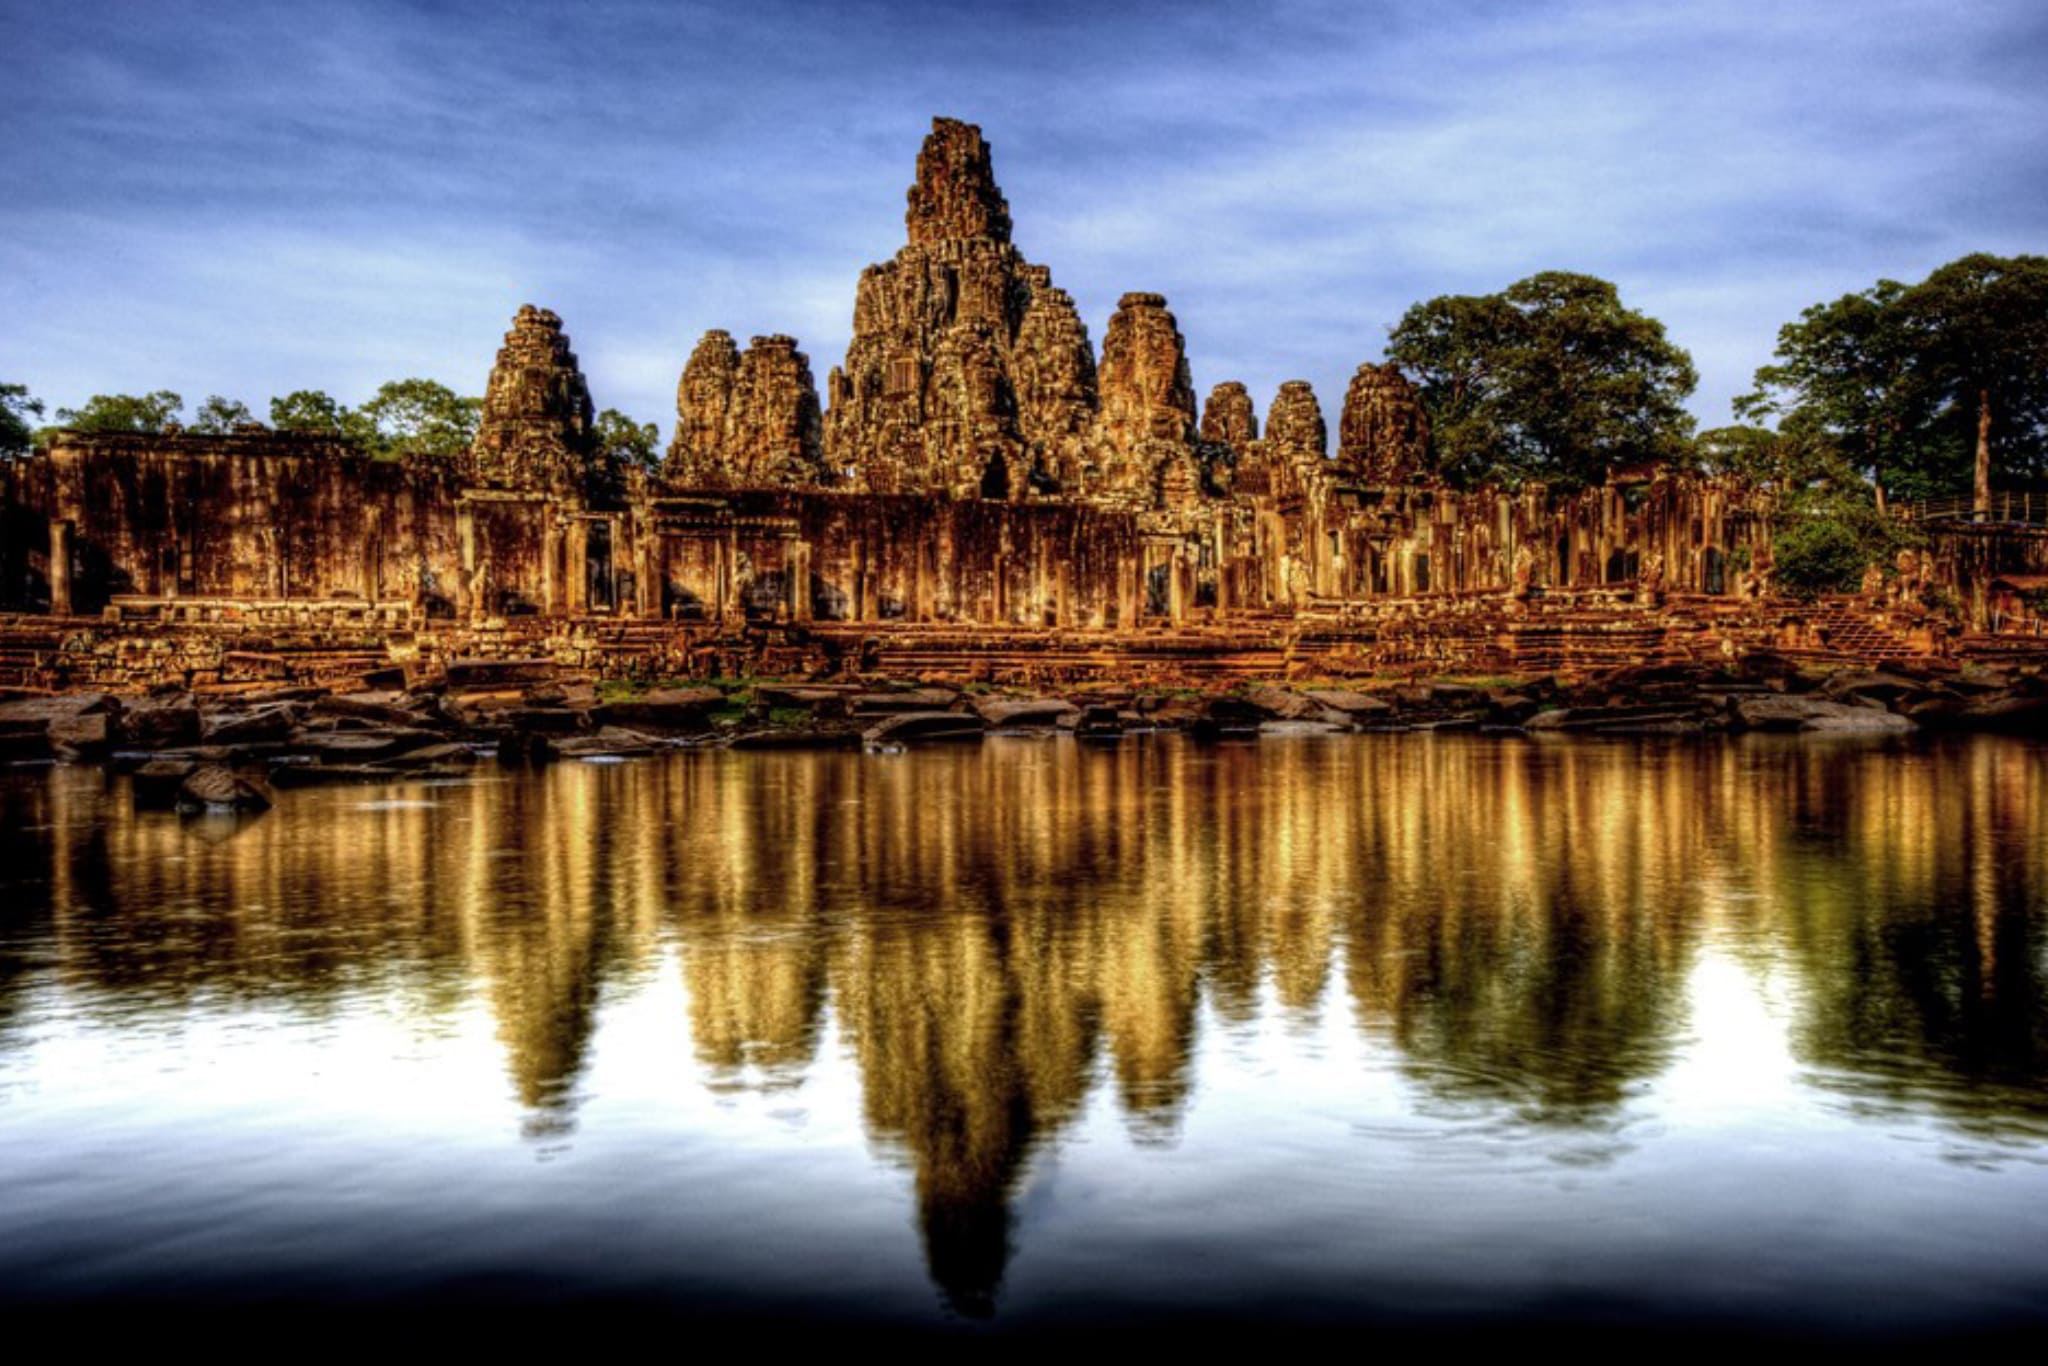 tourism in cambodia essay